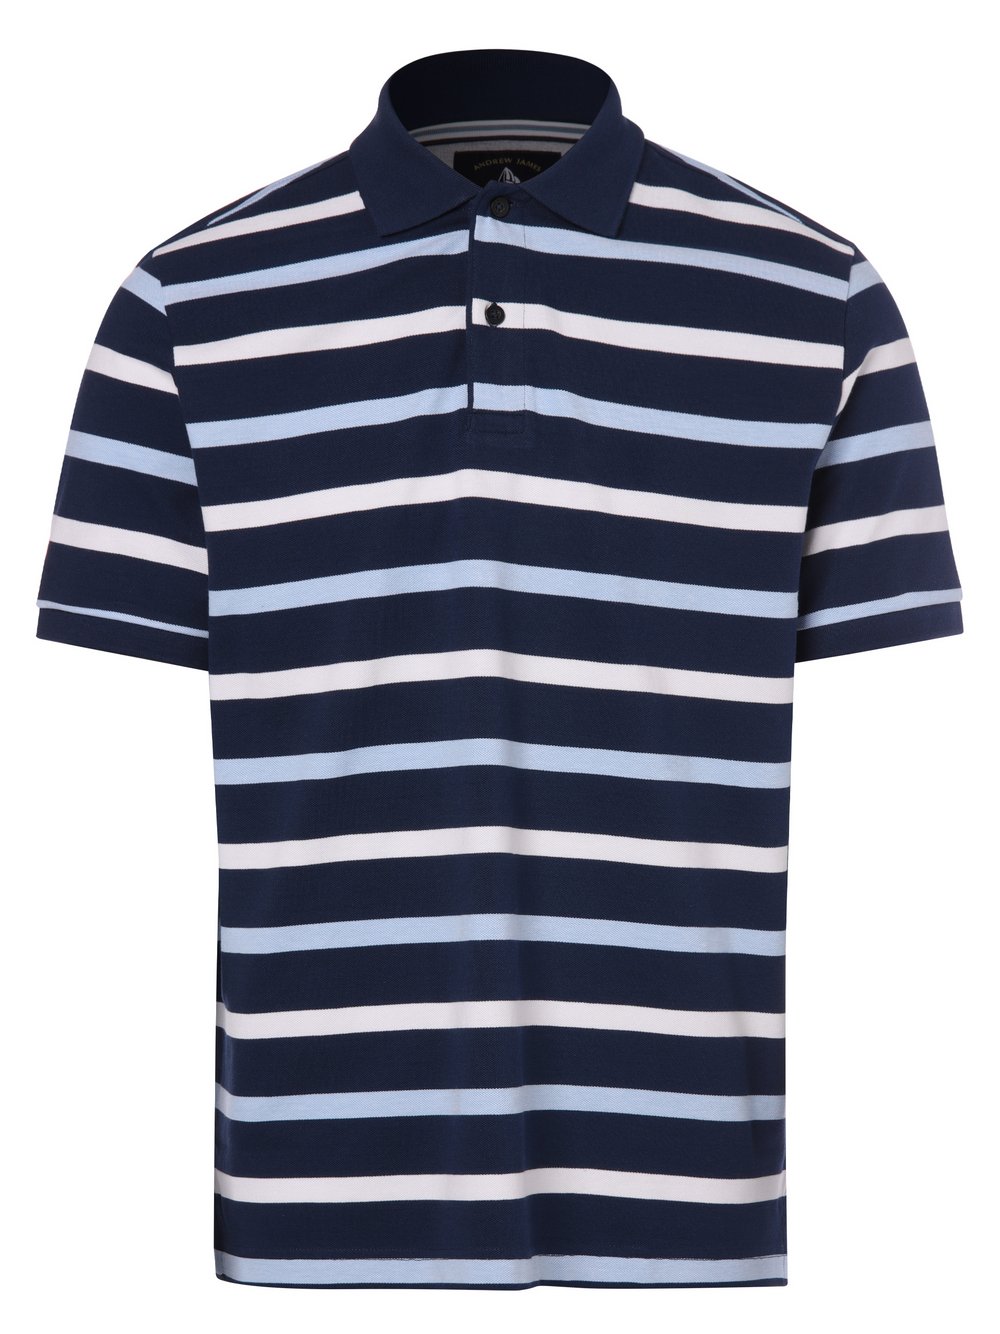 Andrew James Sailing - Męska koszulka polo, niebieski|wielokolorowy